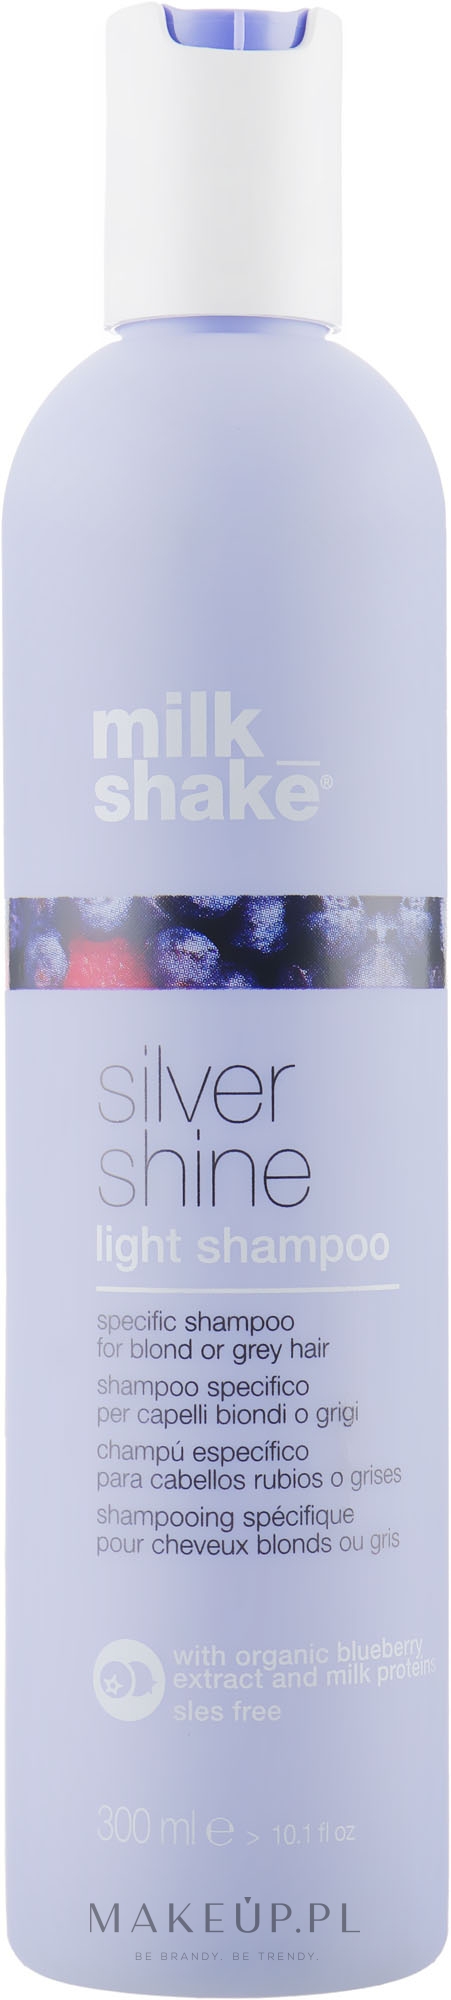 Delikatny szampon do włosów siwych i blond - Milk Shake Silver Shine Light Shampoo — Zdjęcie 300 ml